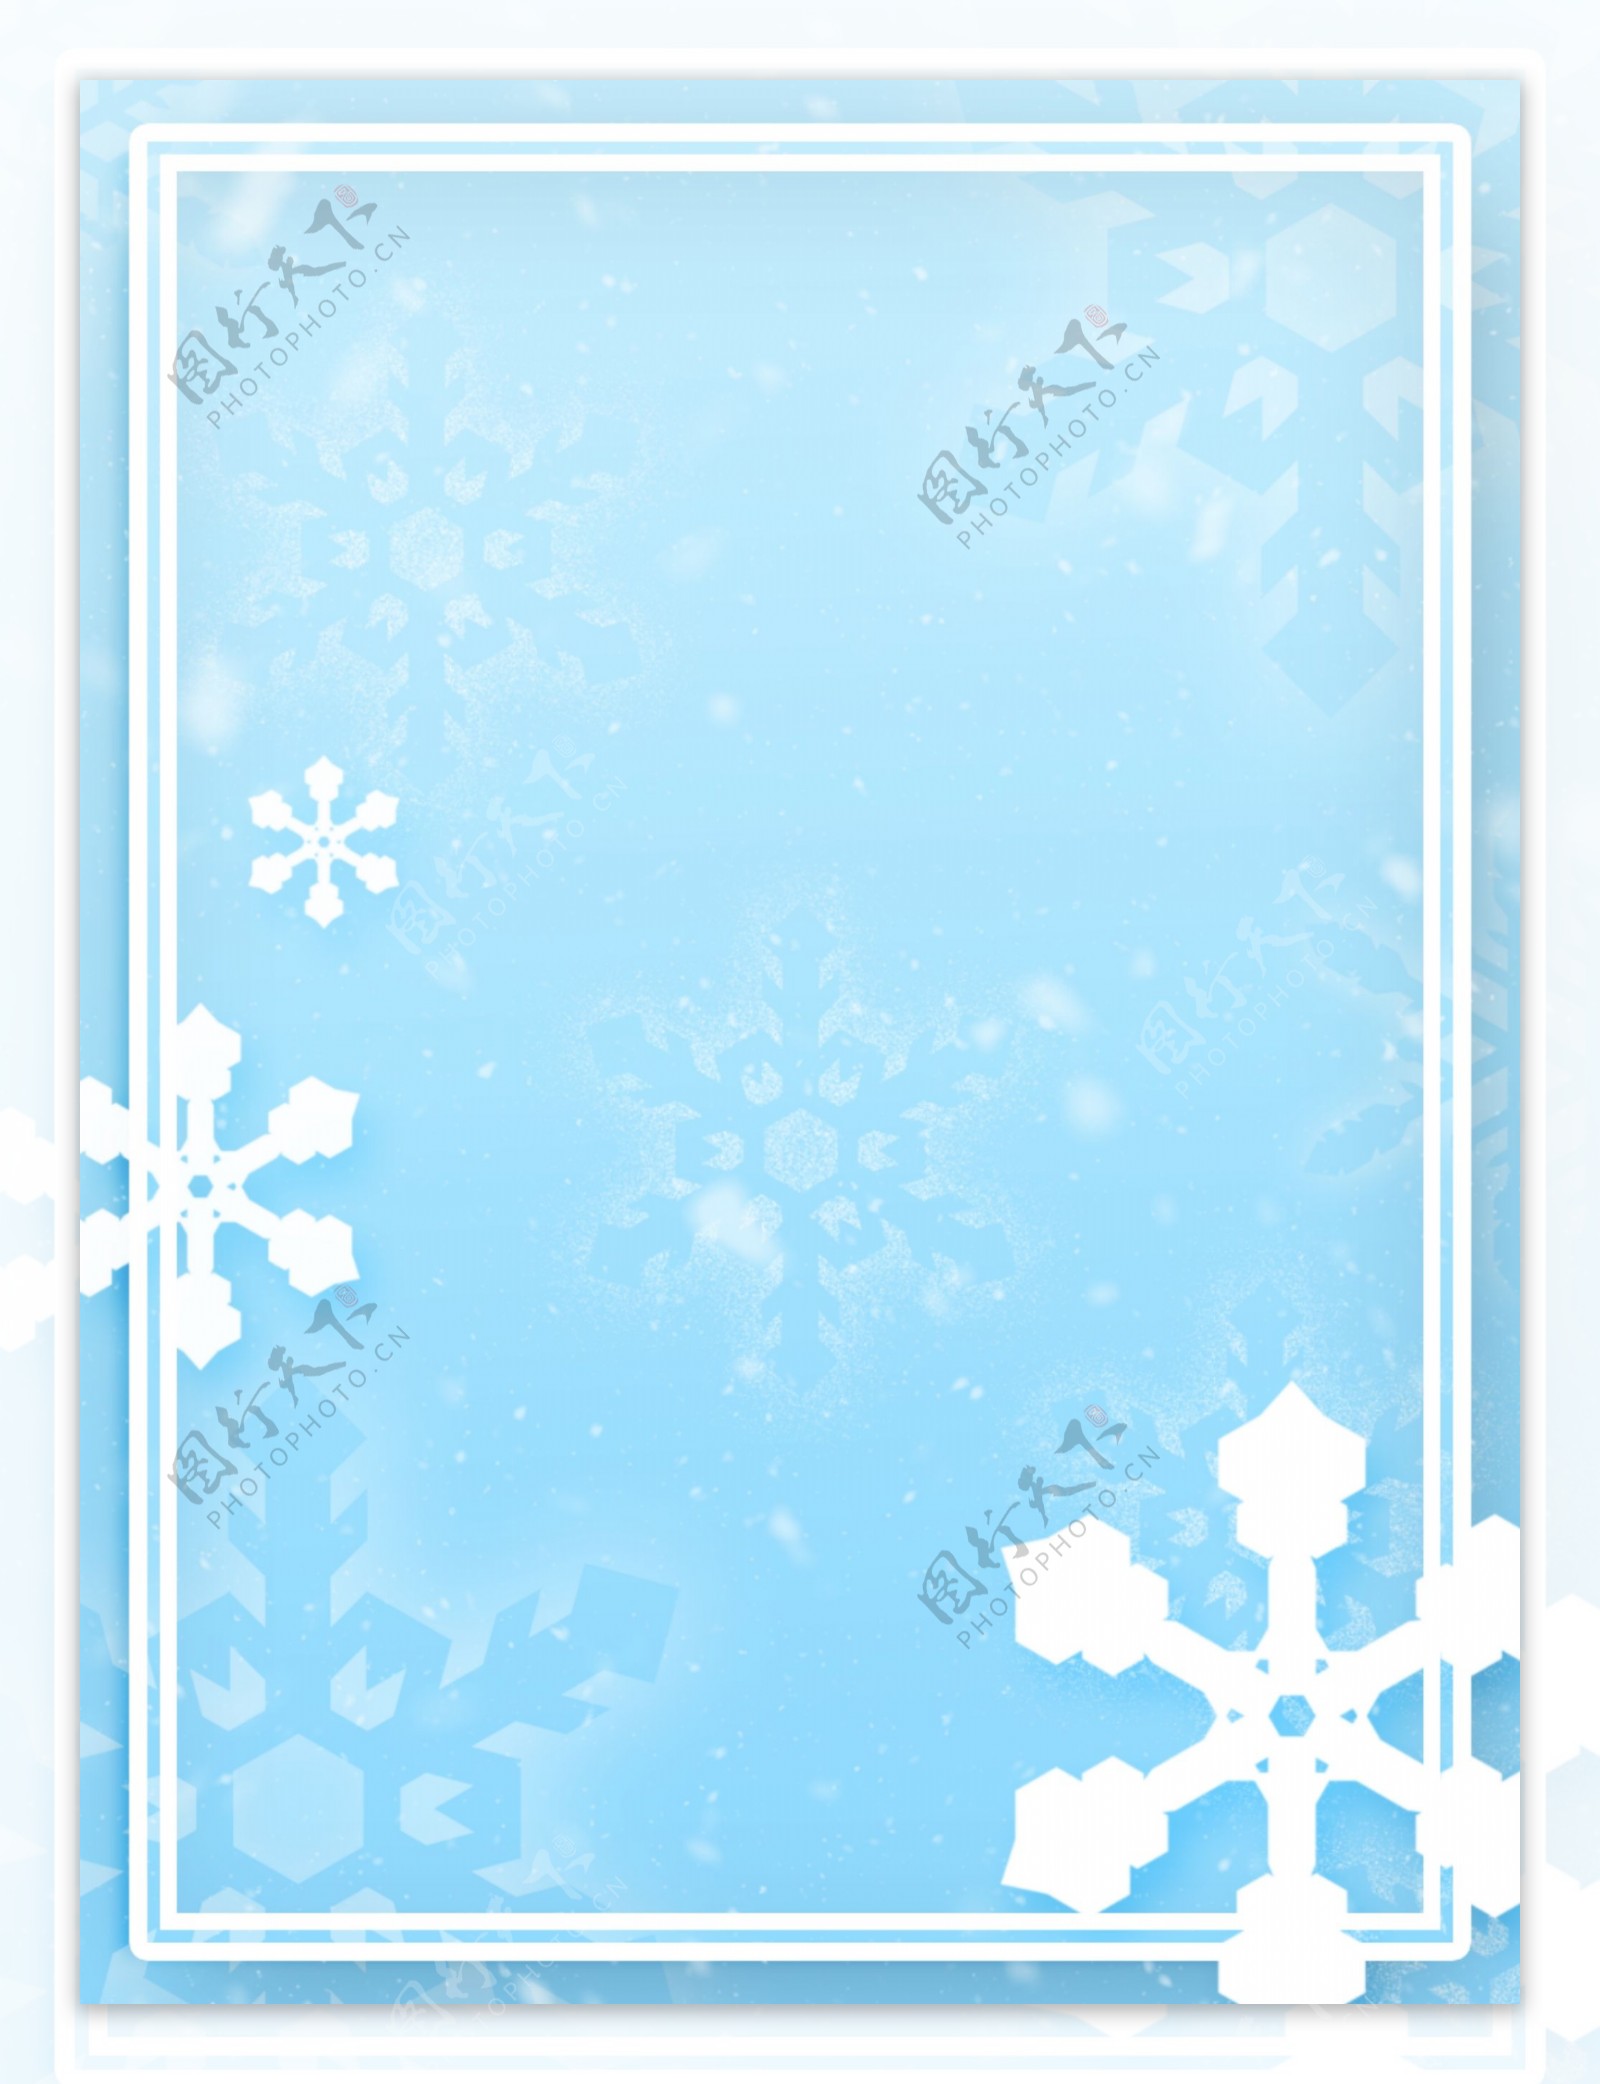 原创简约蓝色精致冬天白色雪花背景